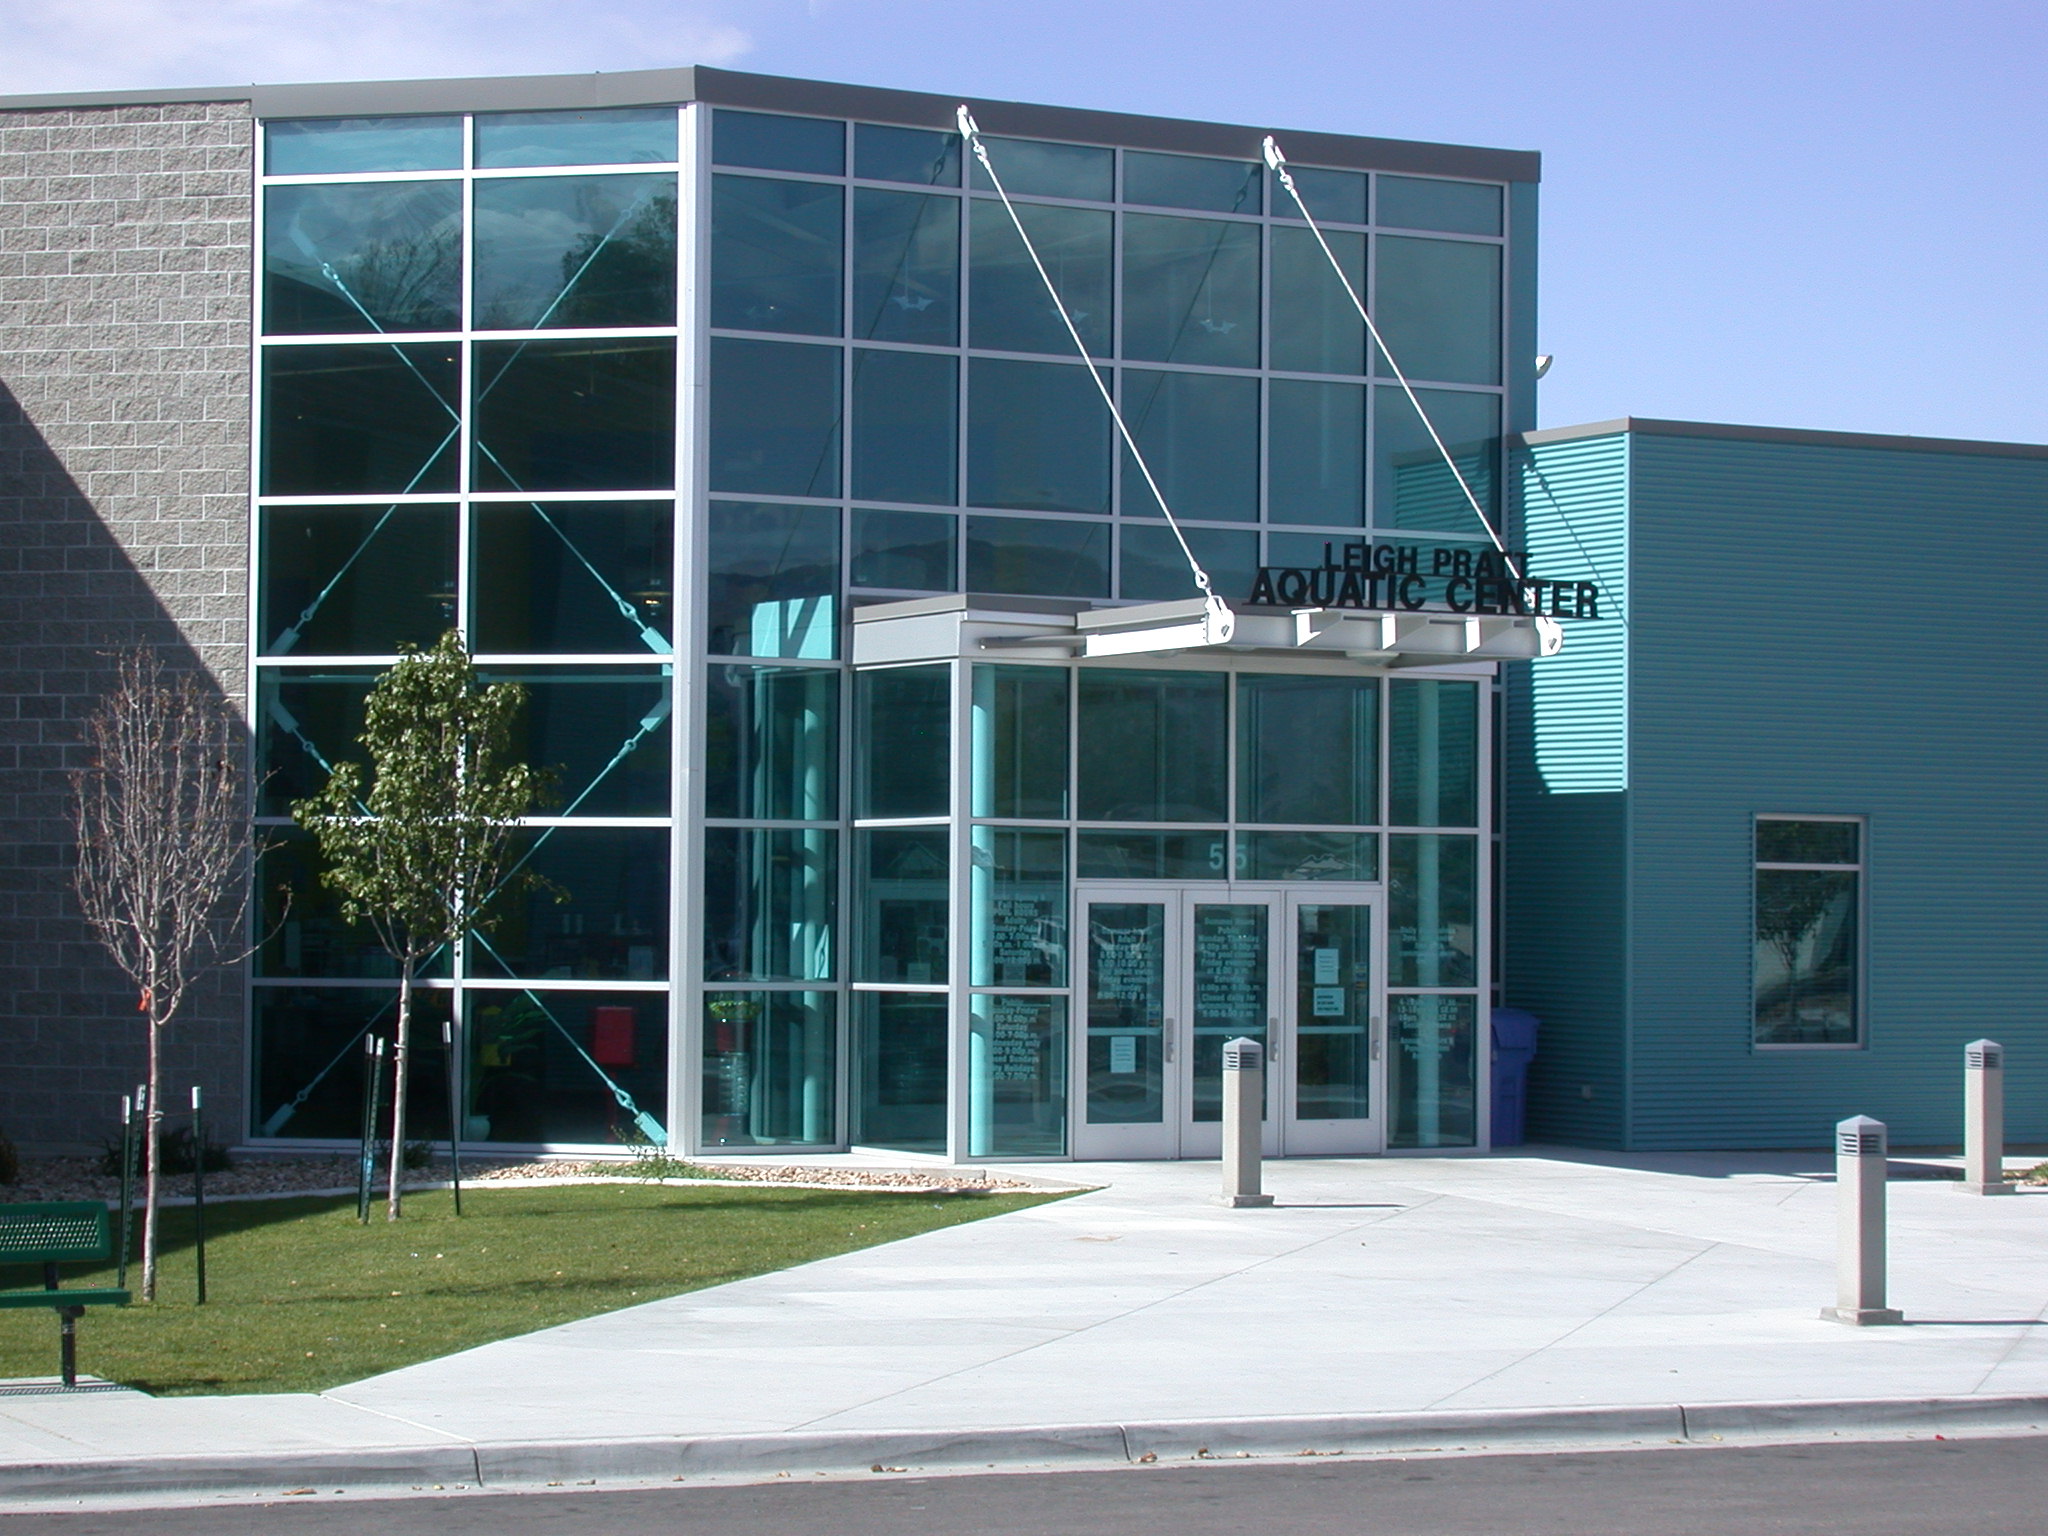 Pratt Aquatic Center Image